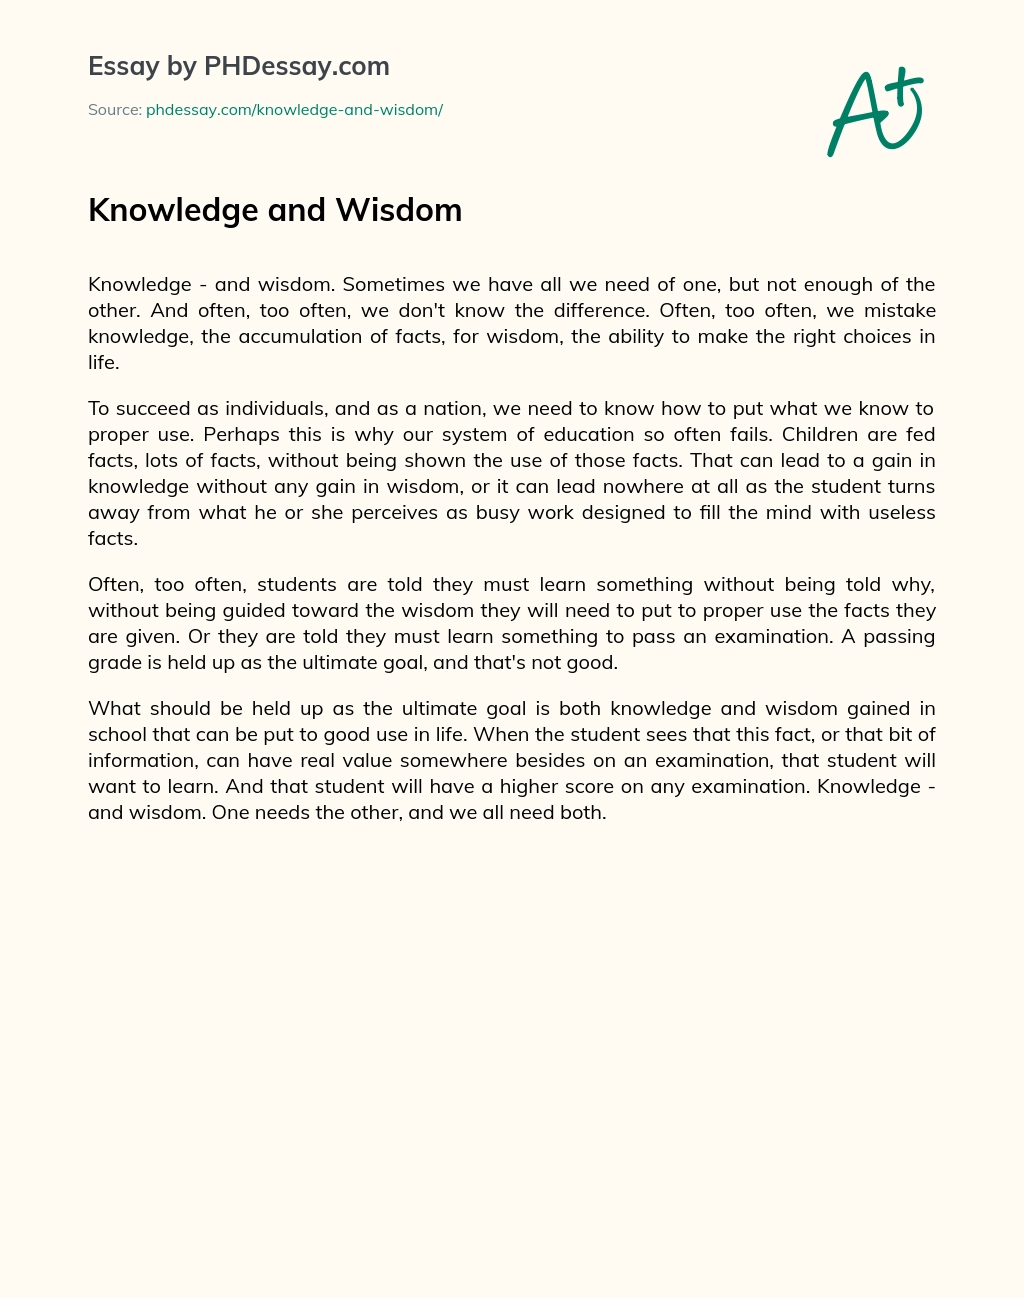 Knowledge and Wisdom essay